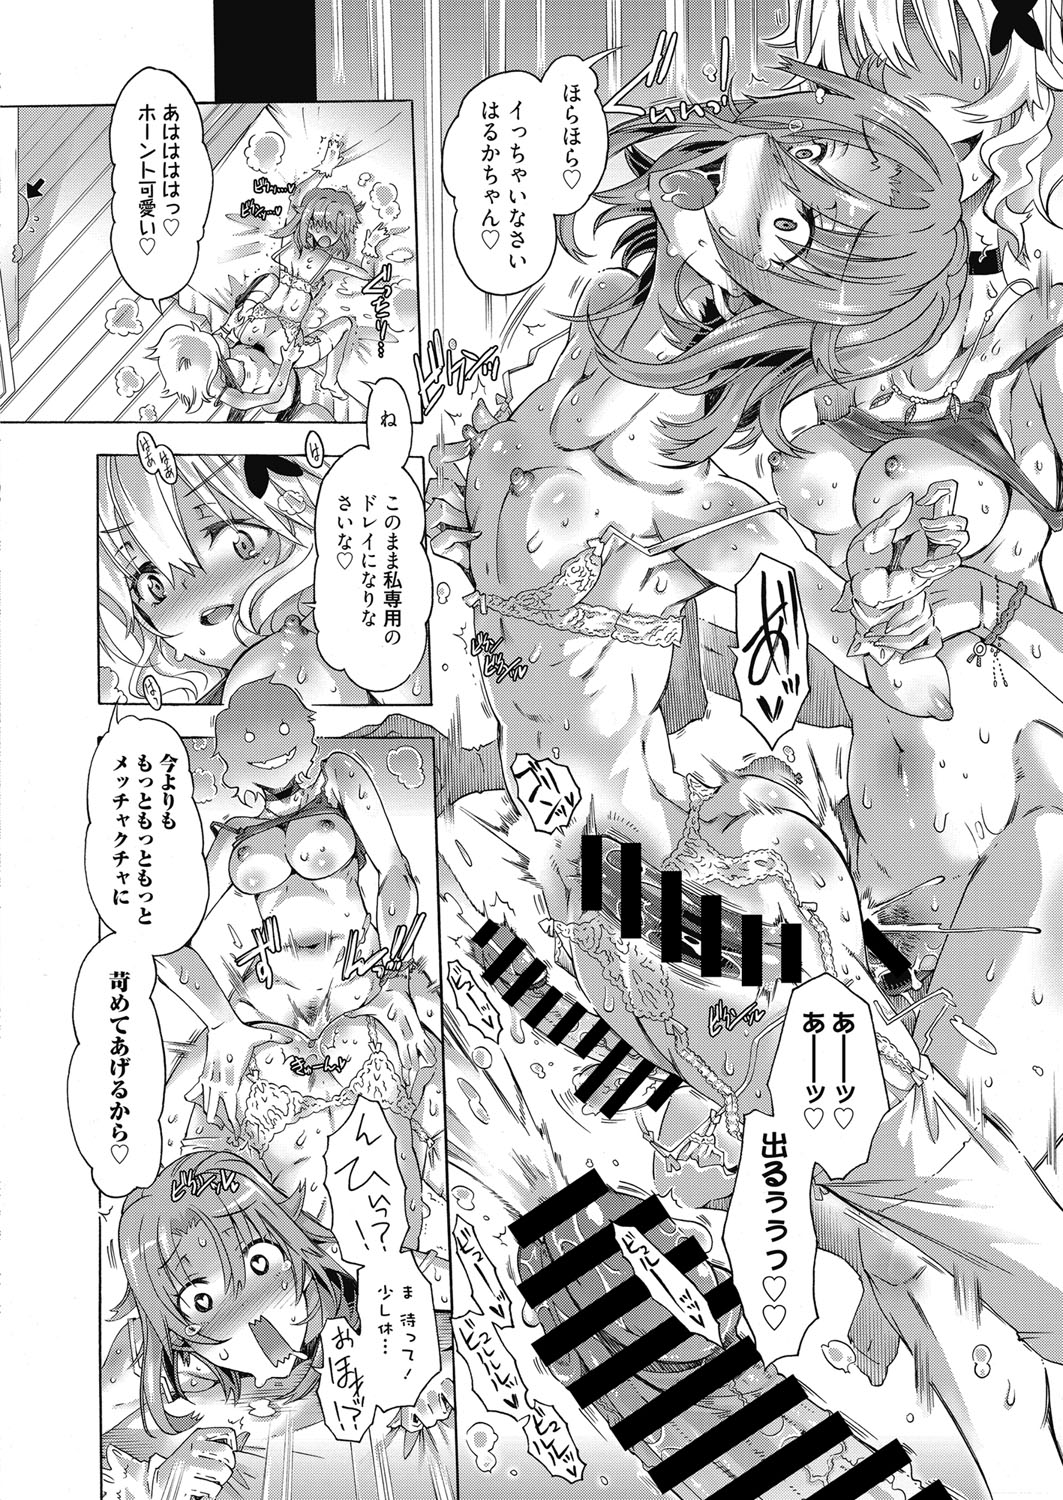 web 漫画ばんがいち Vol.19